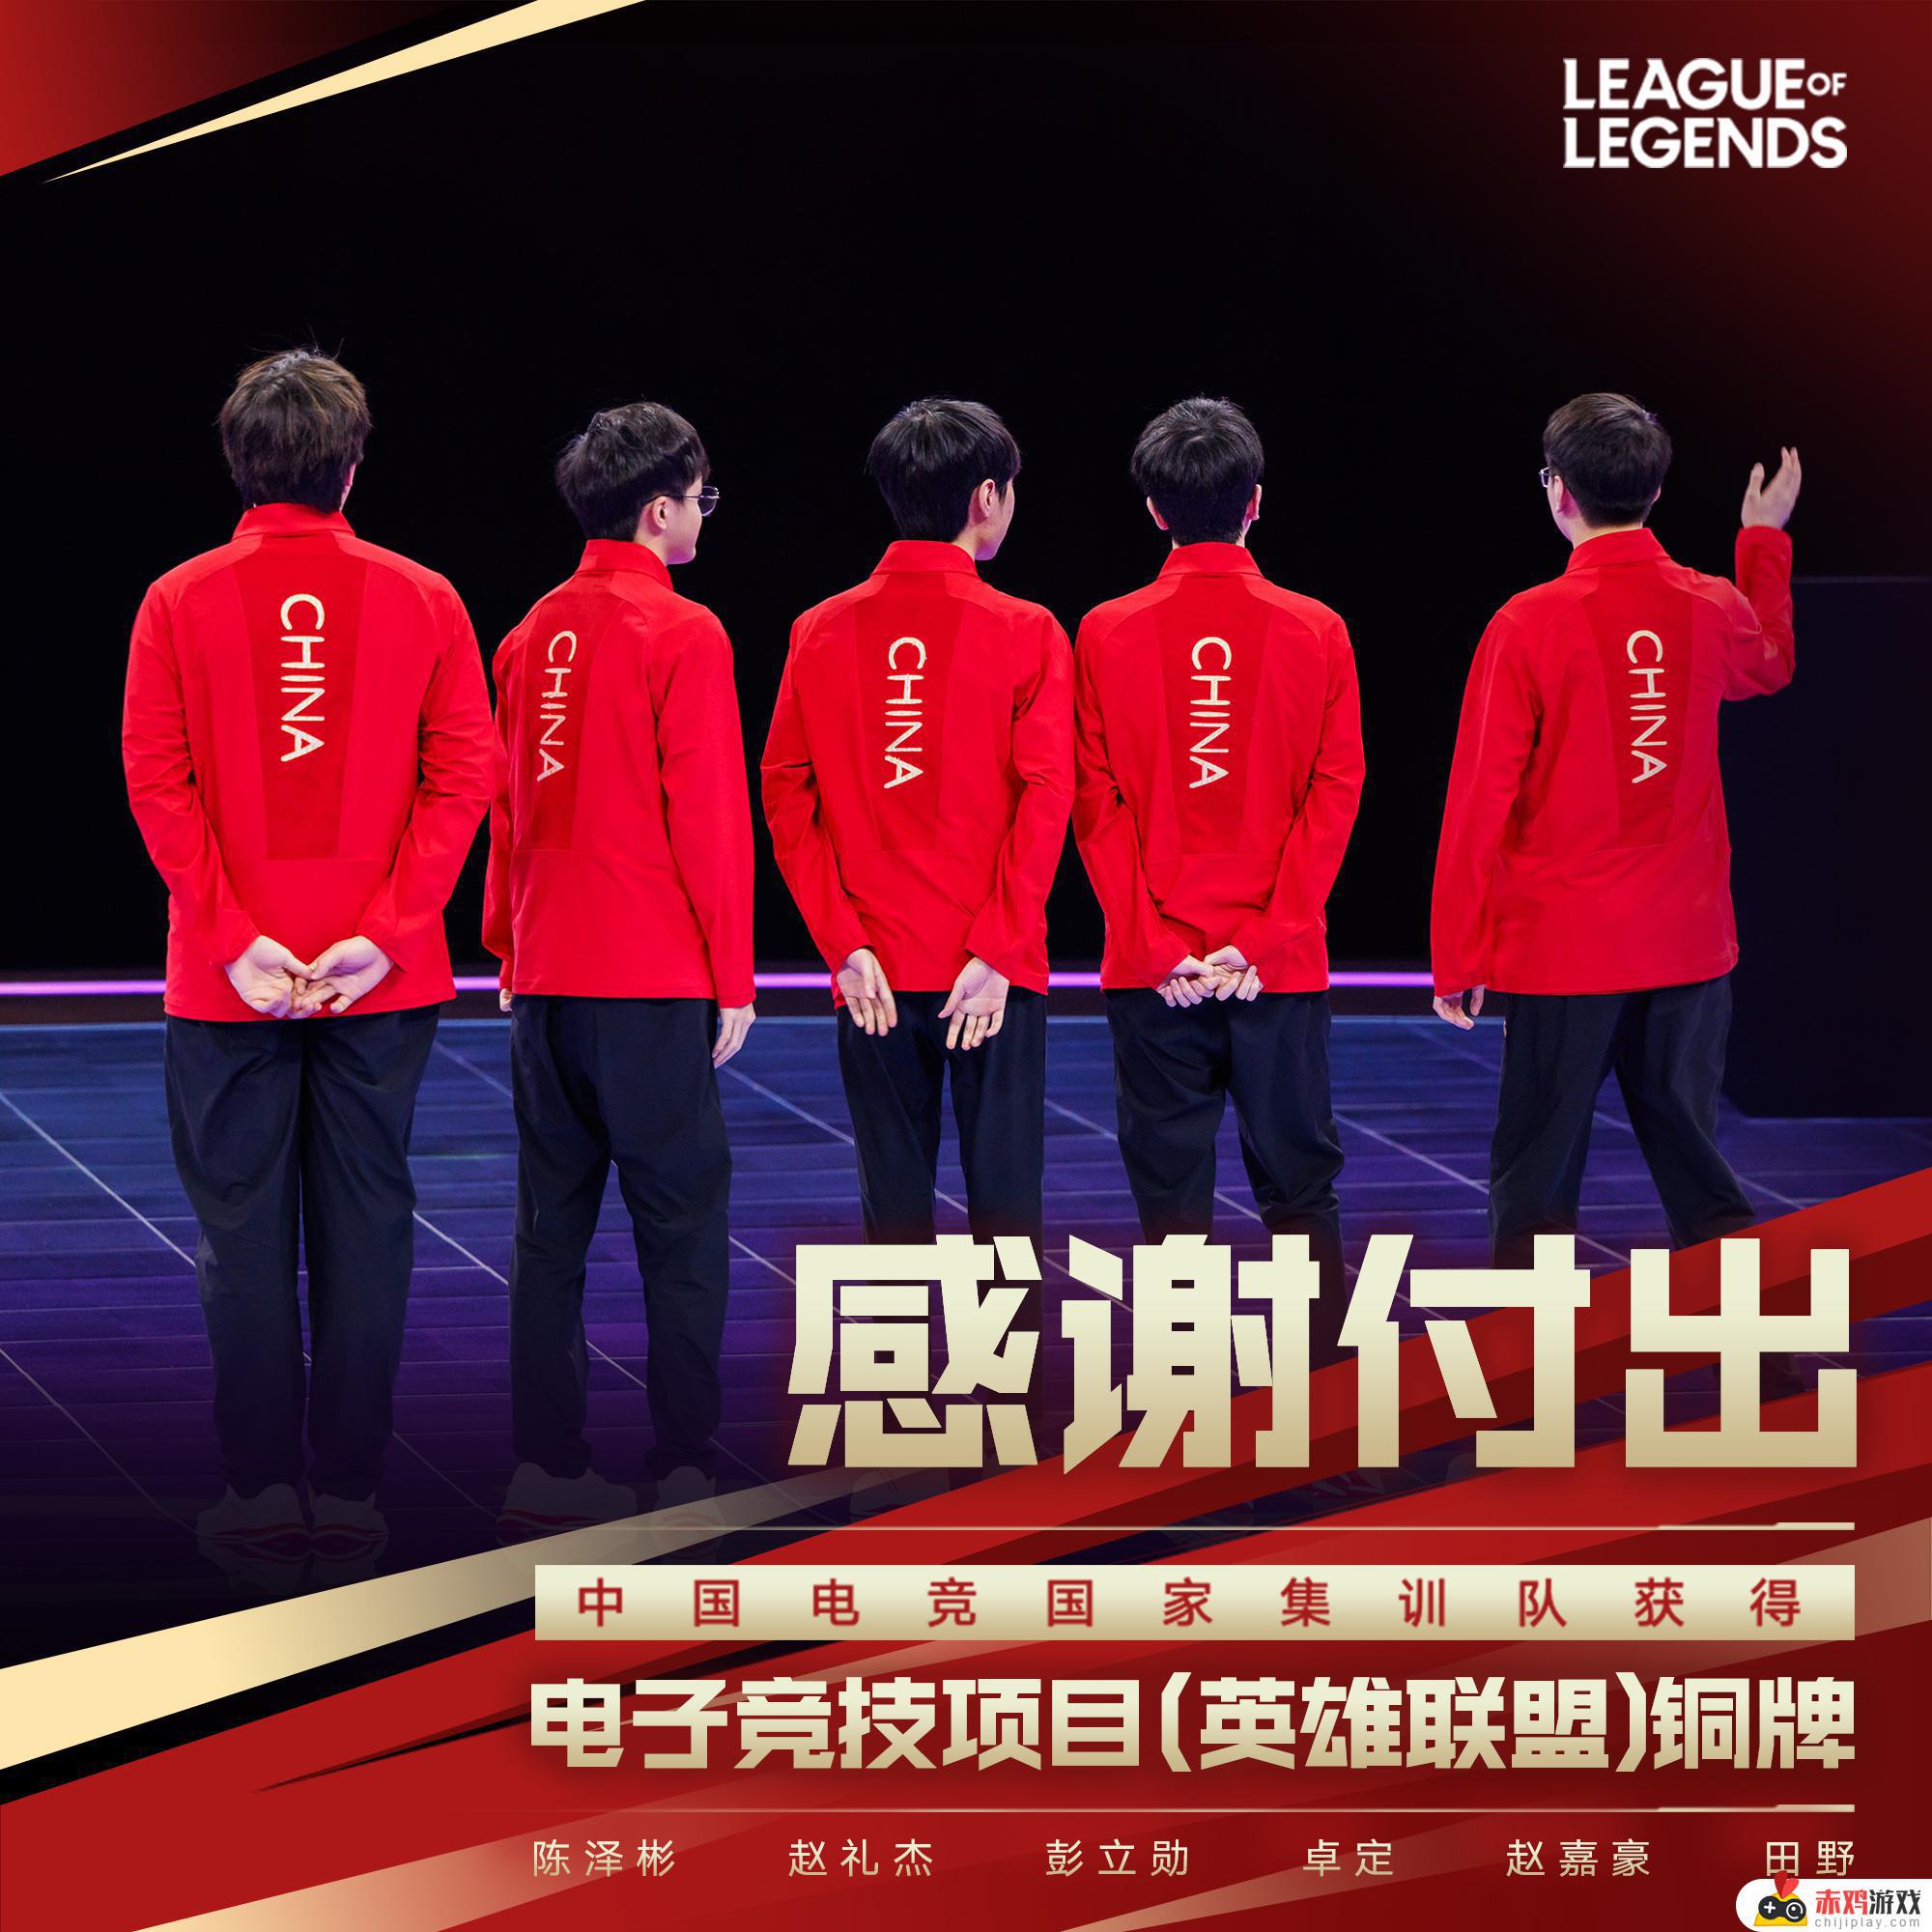 中国队获得电子竞技项目（英雄联盟）铜牌：中国队英雄联盟表现亮眼，勇夺铜牌！